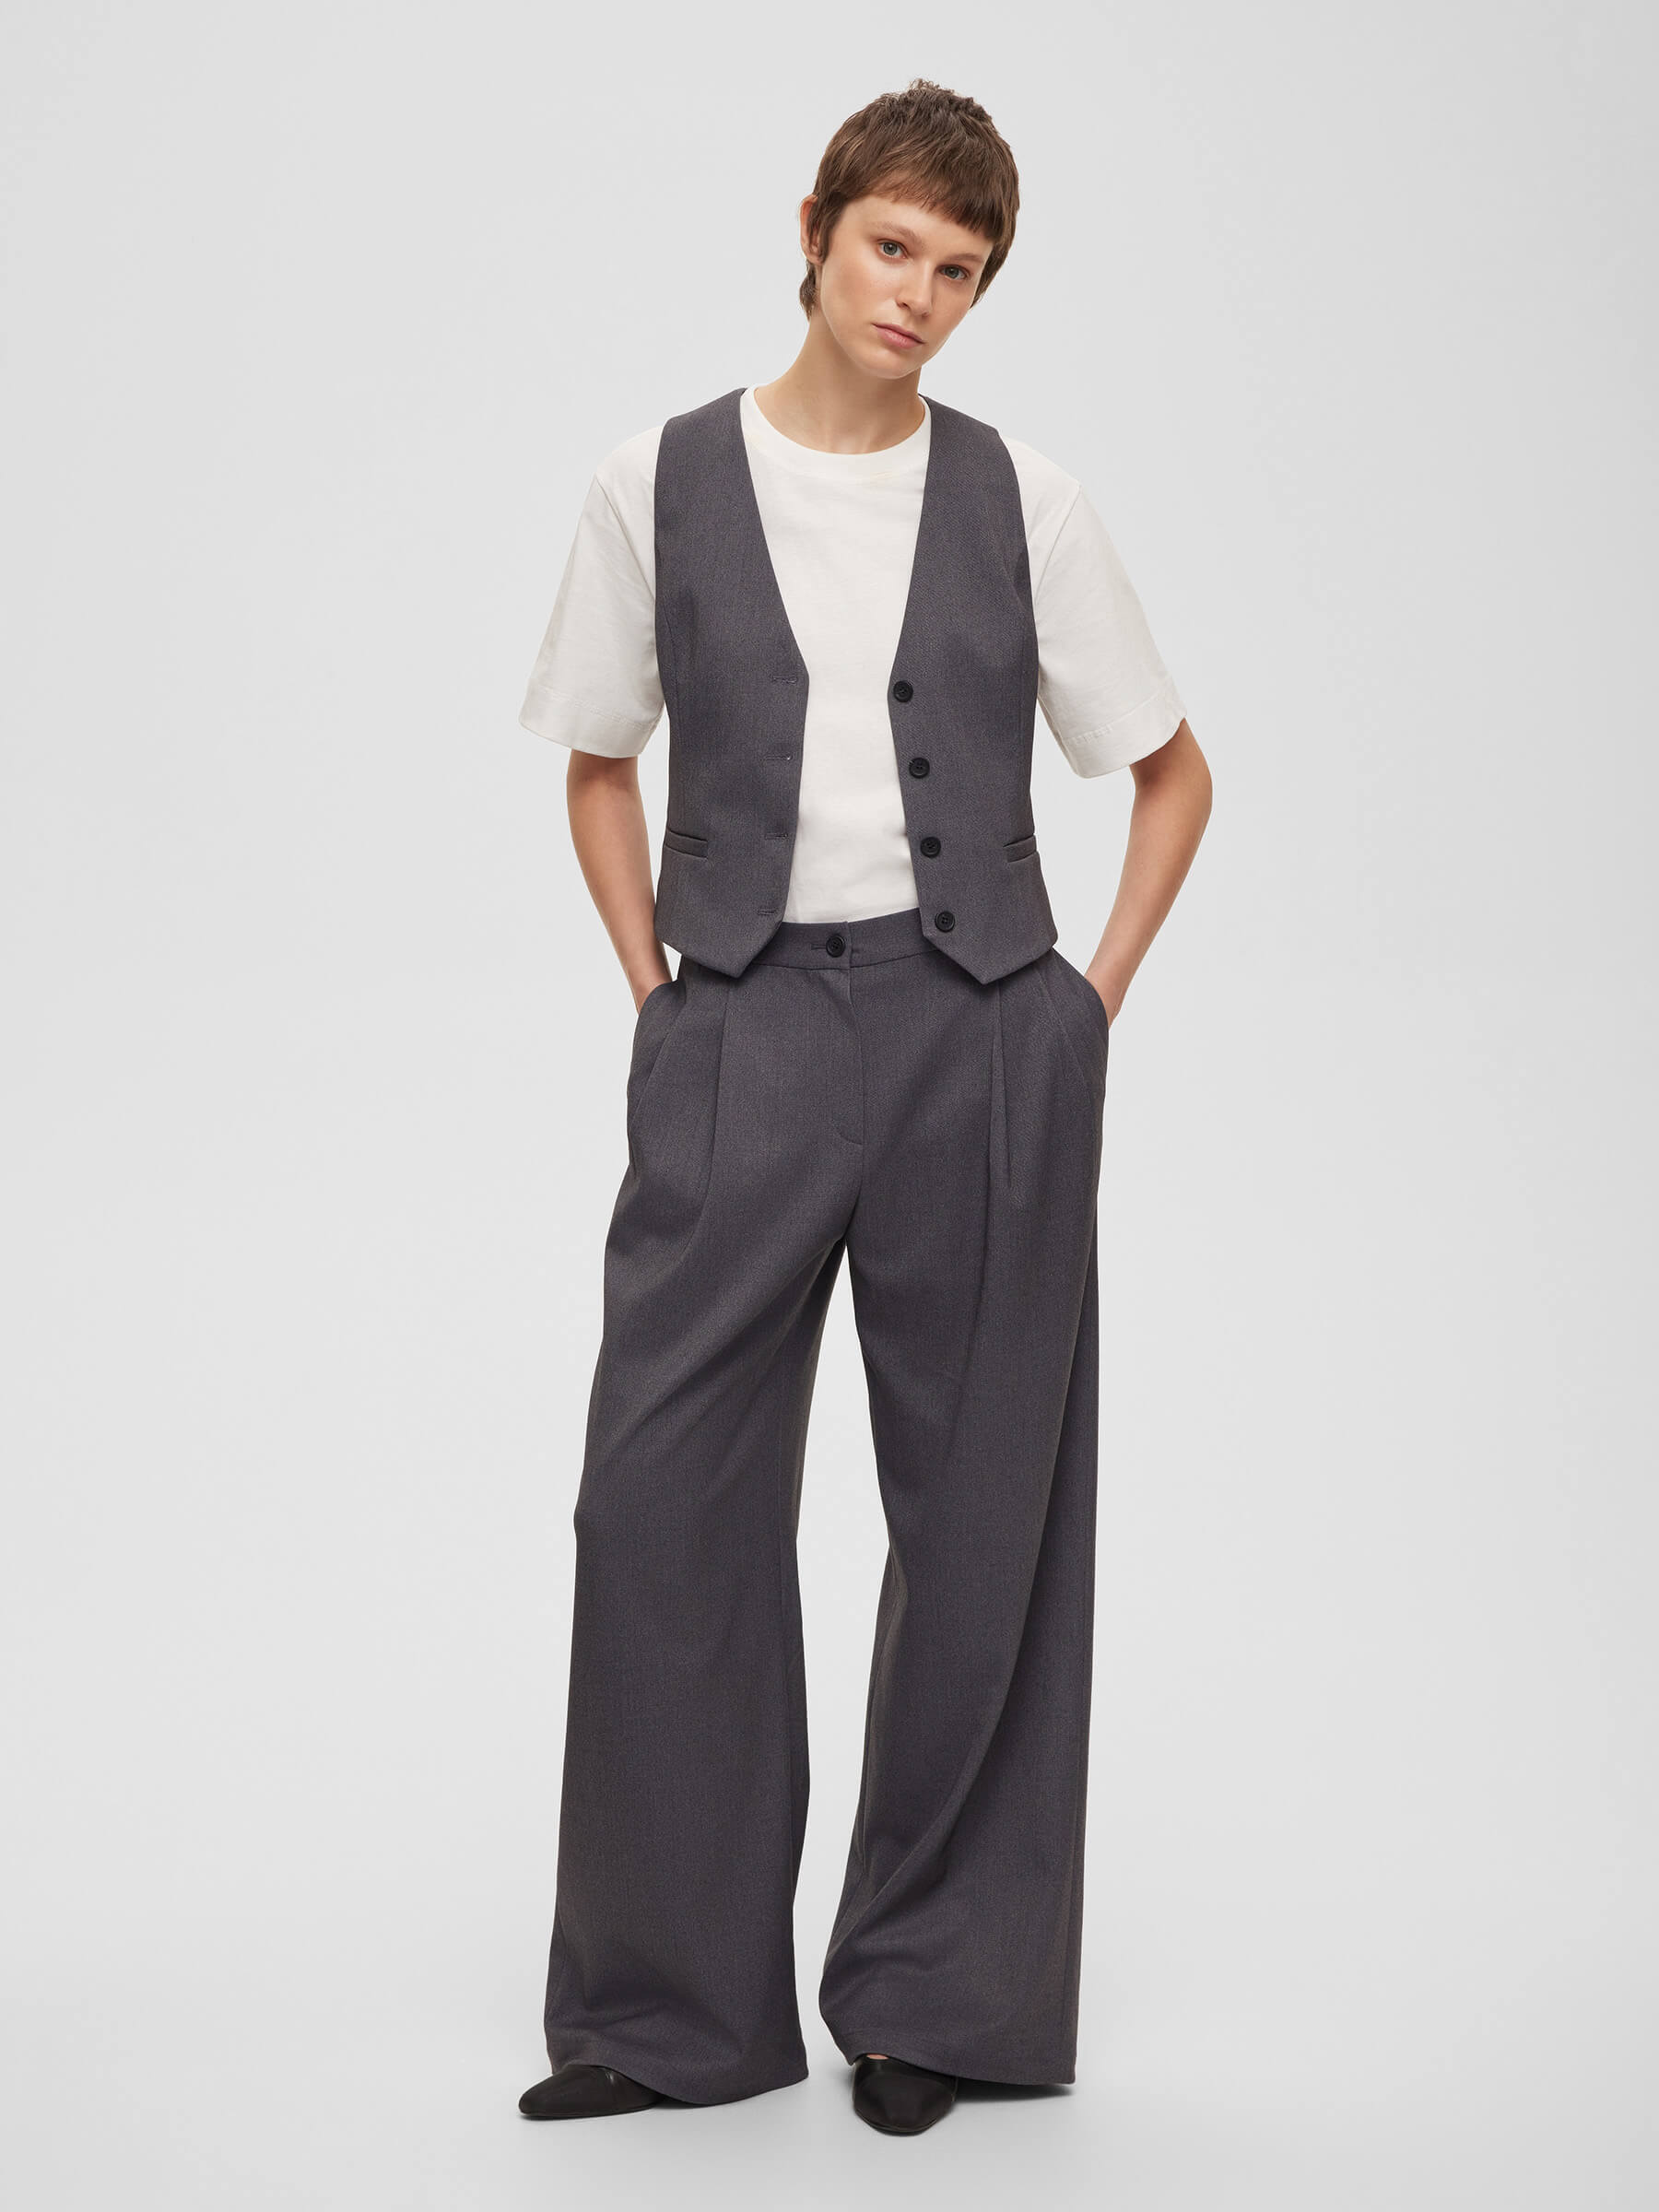 Брюки женские широкие с защипами, цвет – серый брюки в мужском стиле с защипами zara серый